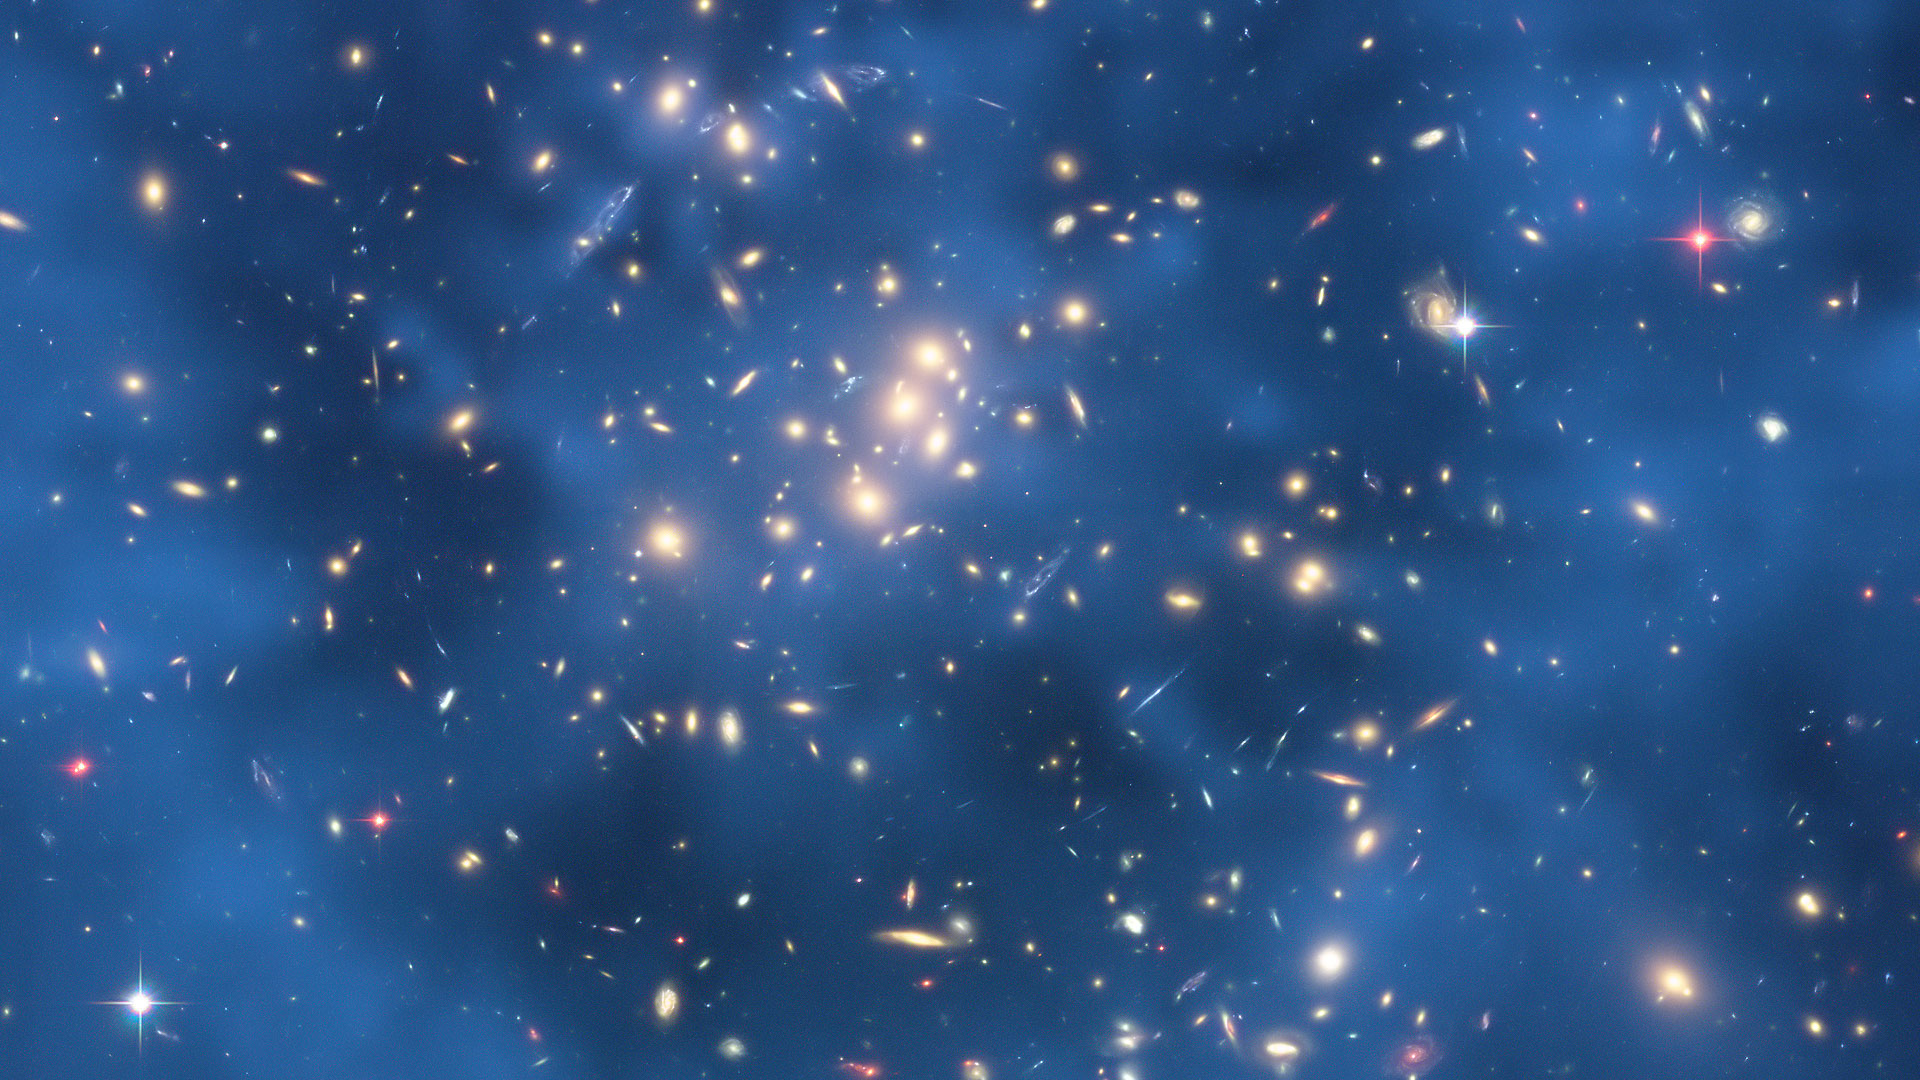 lentille gravitationnelle dans 0024 1654. Image prise par le HST de l'amas 0024 1654. Les objets bleus sont des images multiples d'une galaxie située loin derrière l'amas. C'est un exemple de lentille gravitationnelle